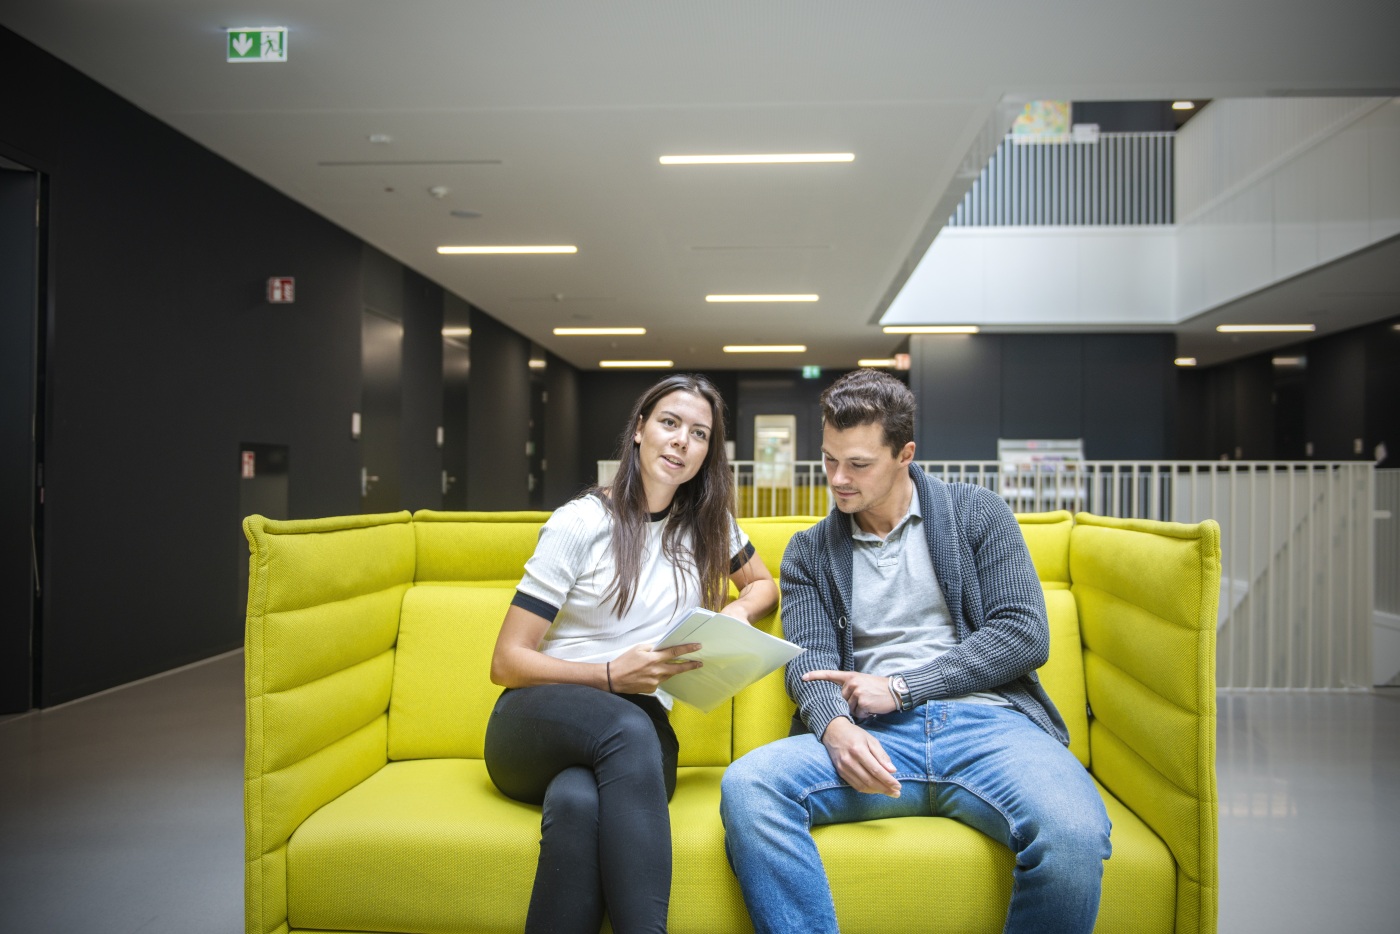 Doktorandin und Doktorand im Gespräch auf einer grünen Couch